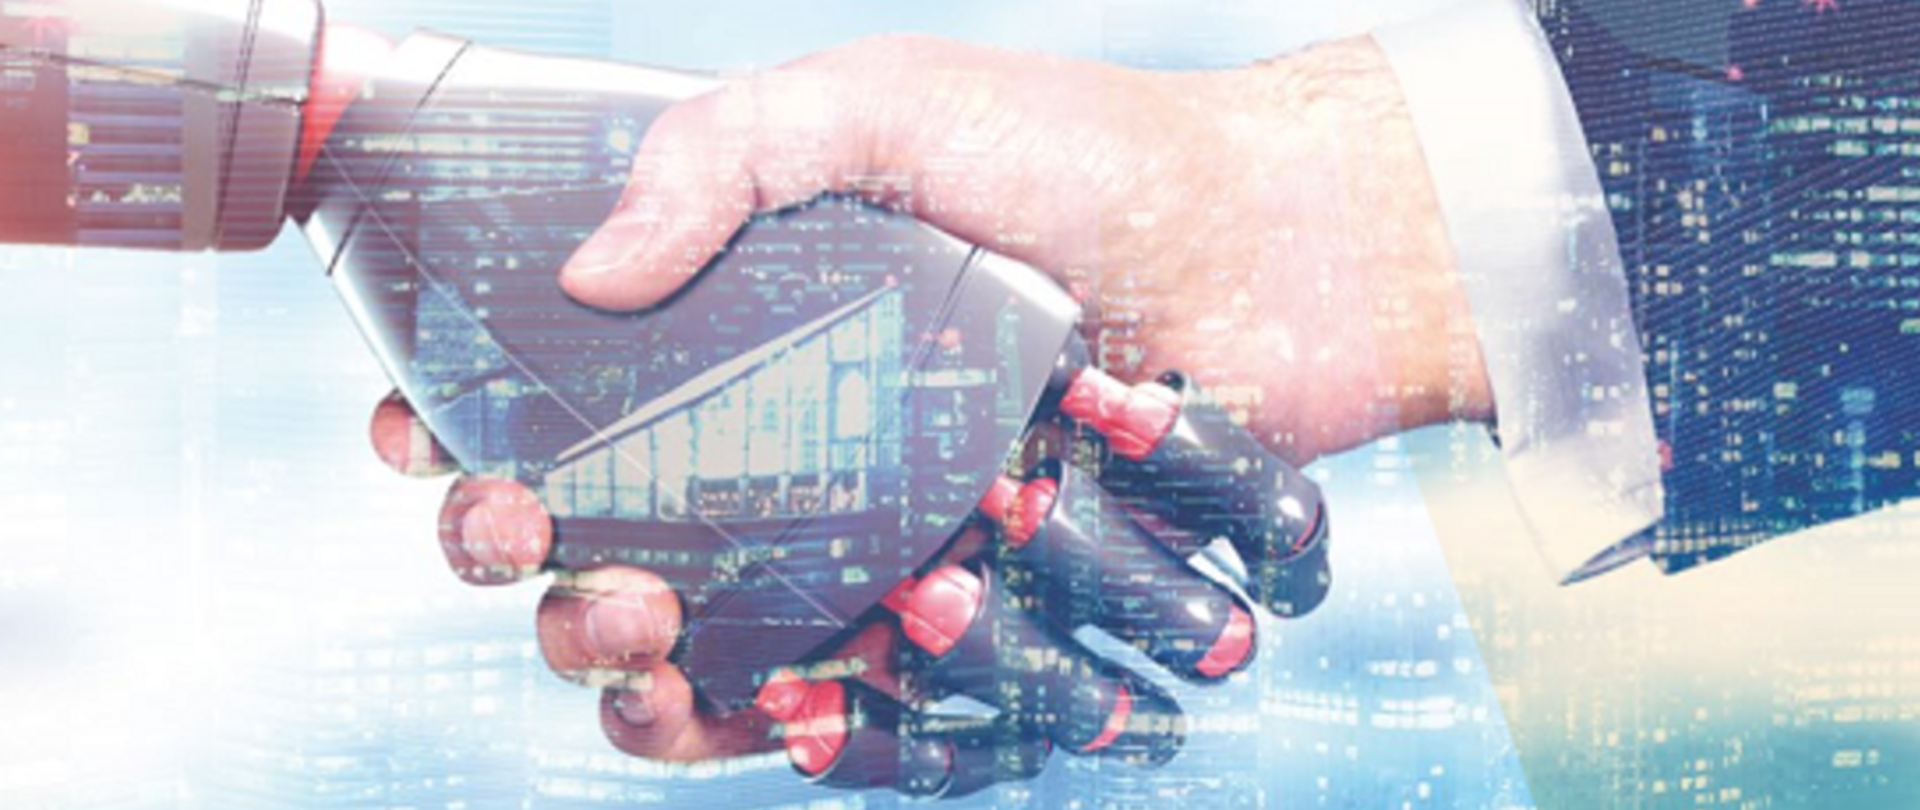 zdjęcie przedstawia uścisk dłoni, z prawej jest normalna ludzka dłoń, natomiast z lewej jest dłoń maszyny-cyborga, wypełniona cyfrowymi danymi